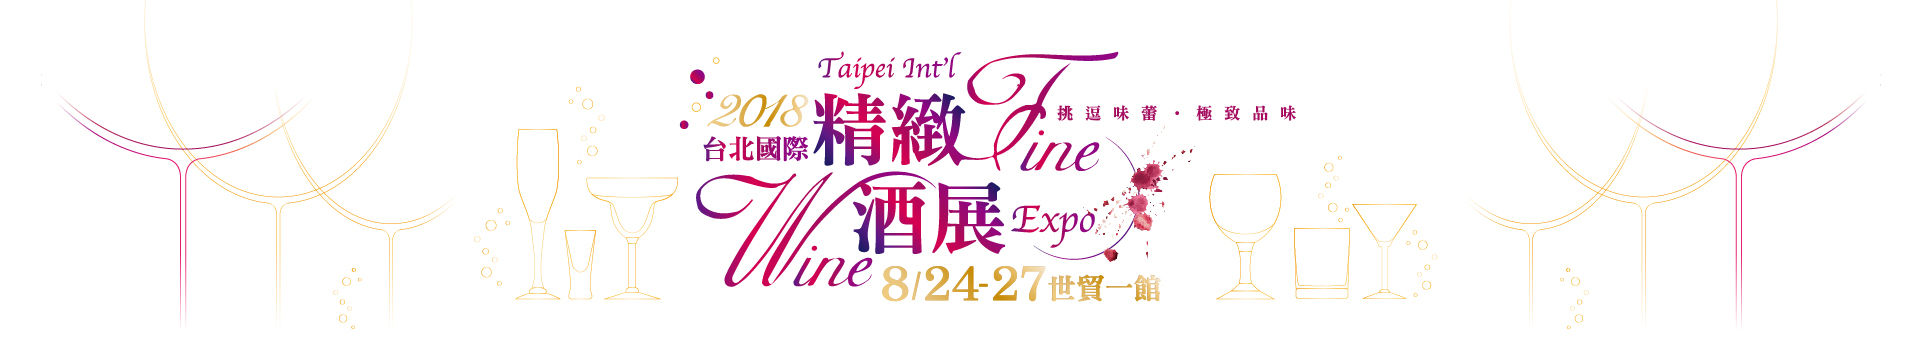 琪樂薇酒廠純糧固態發酵高粱酒將在2018台北精緻酒展與您見面，敬請期待!